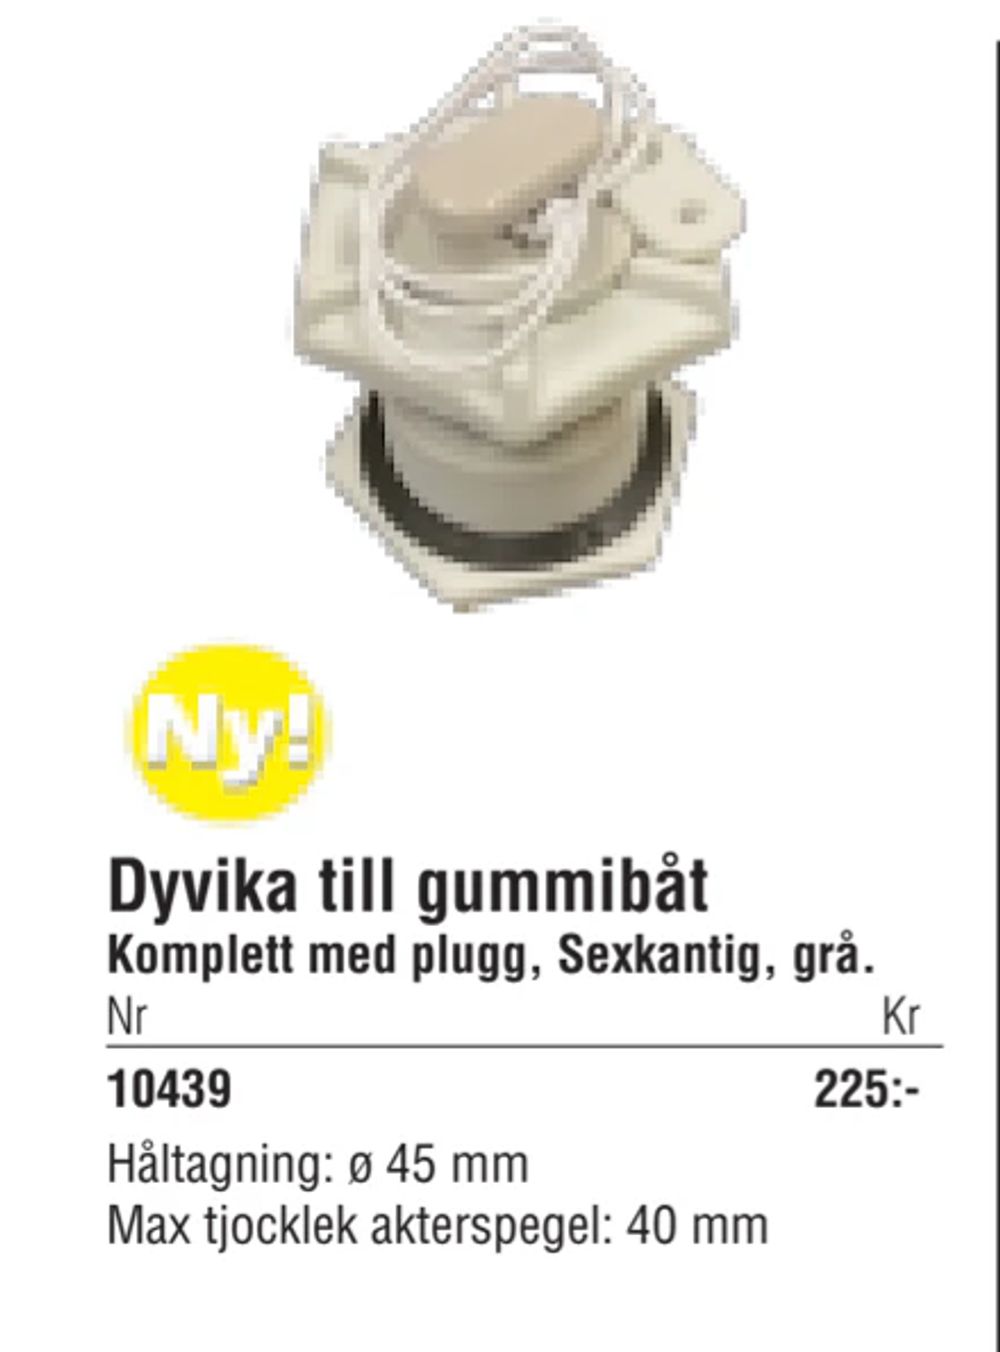 Erbjudanden på Dyvika till gummibåt från Erlandsons Brygga för 225 kr